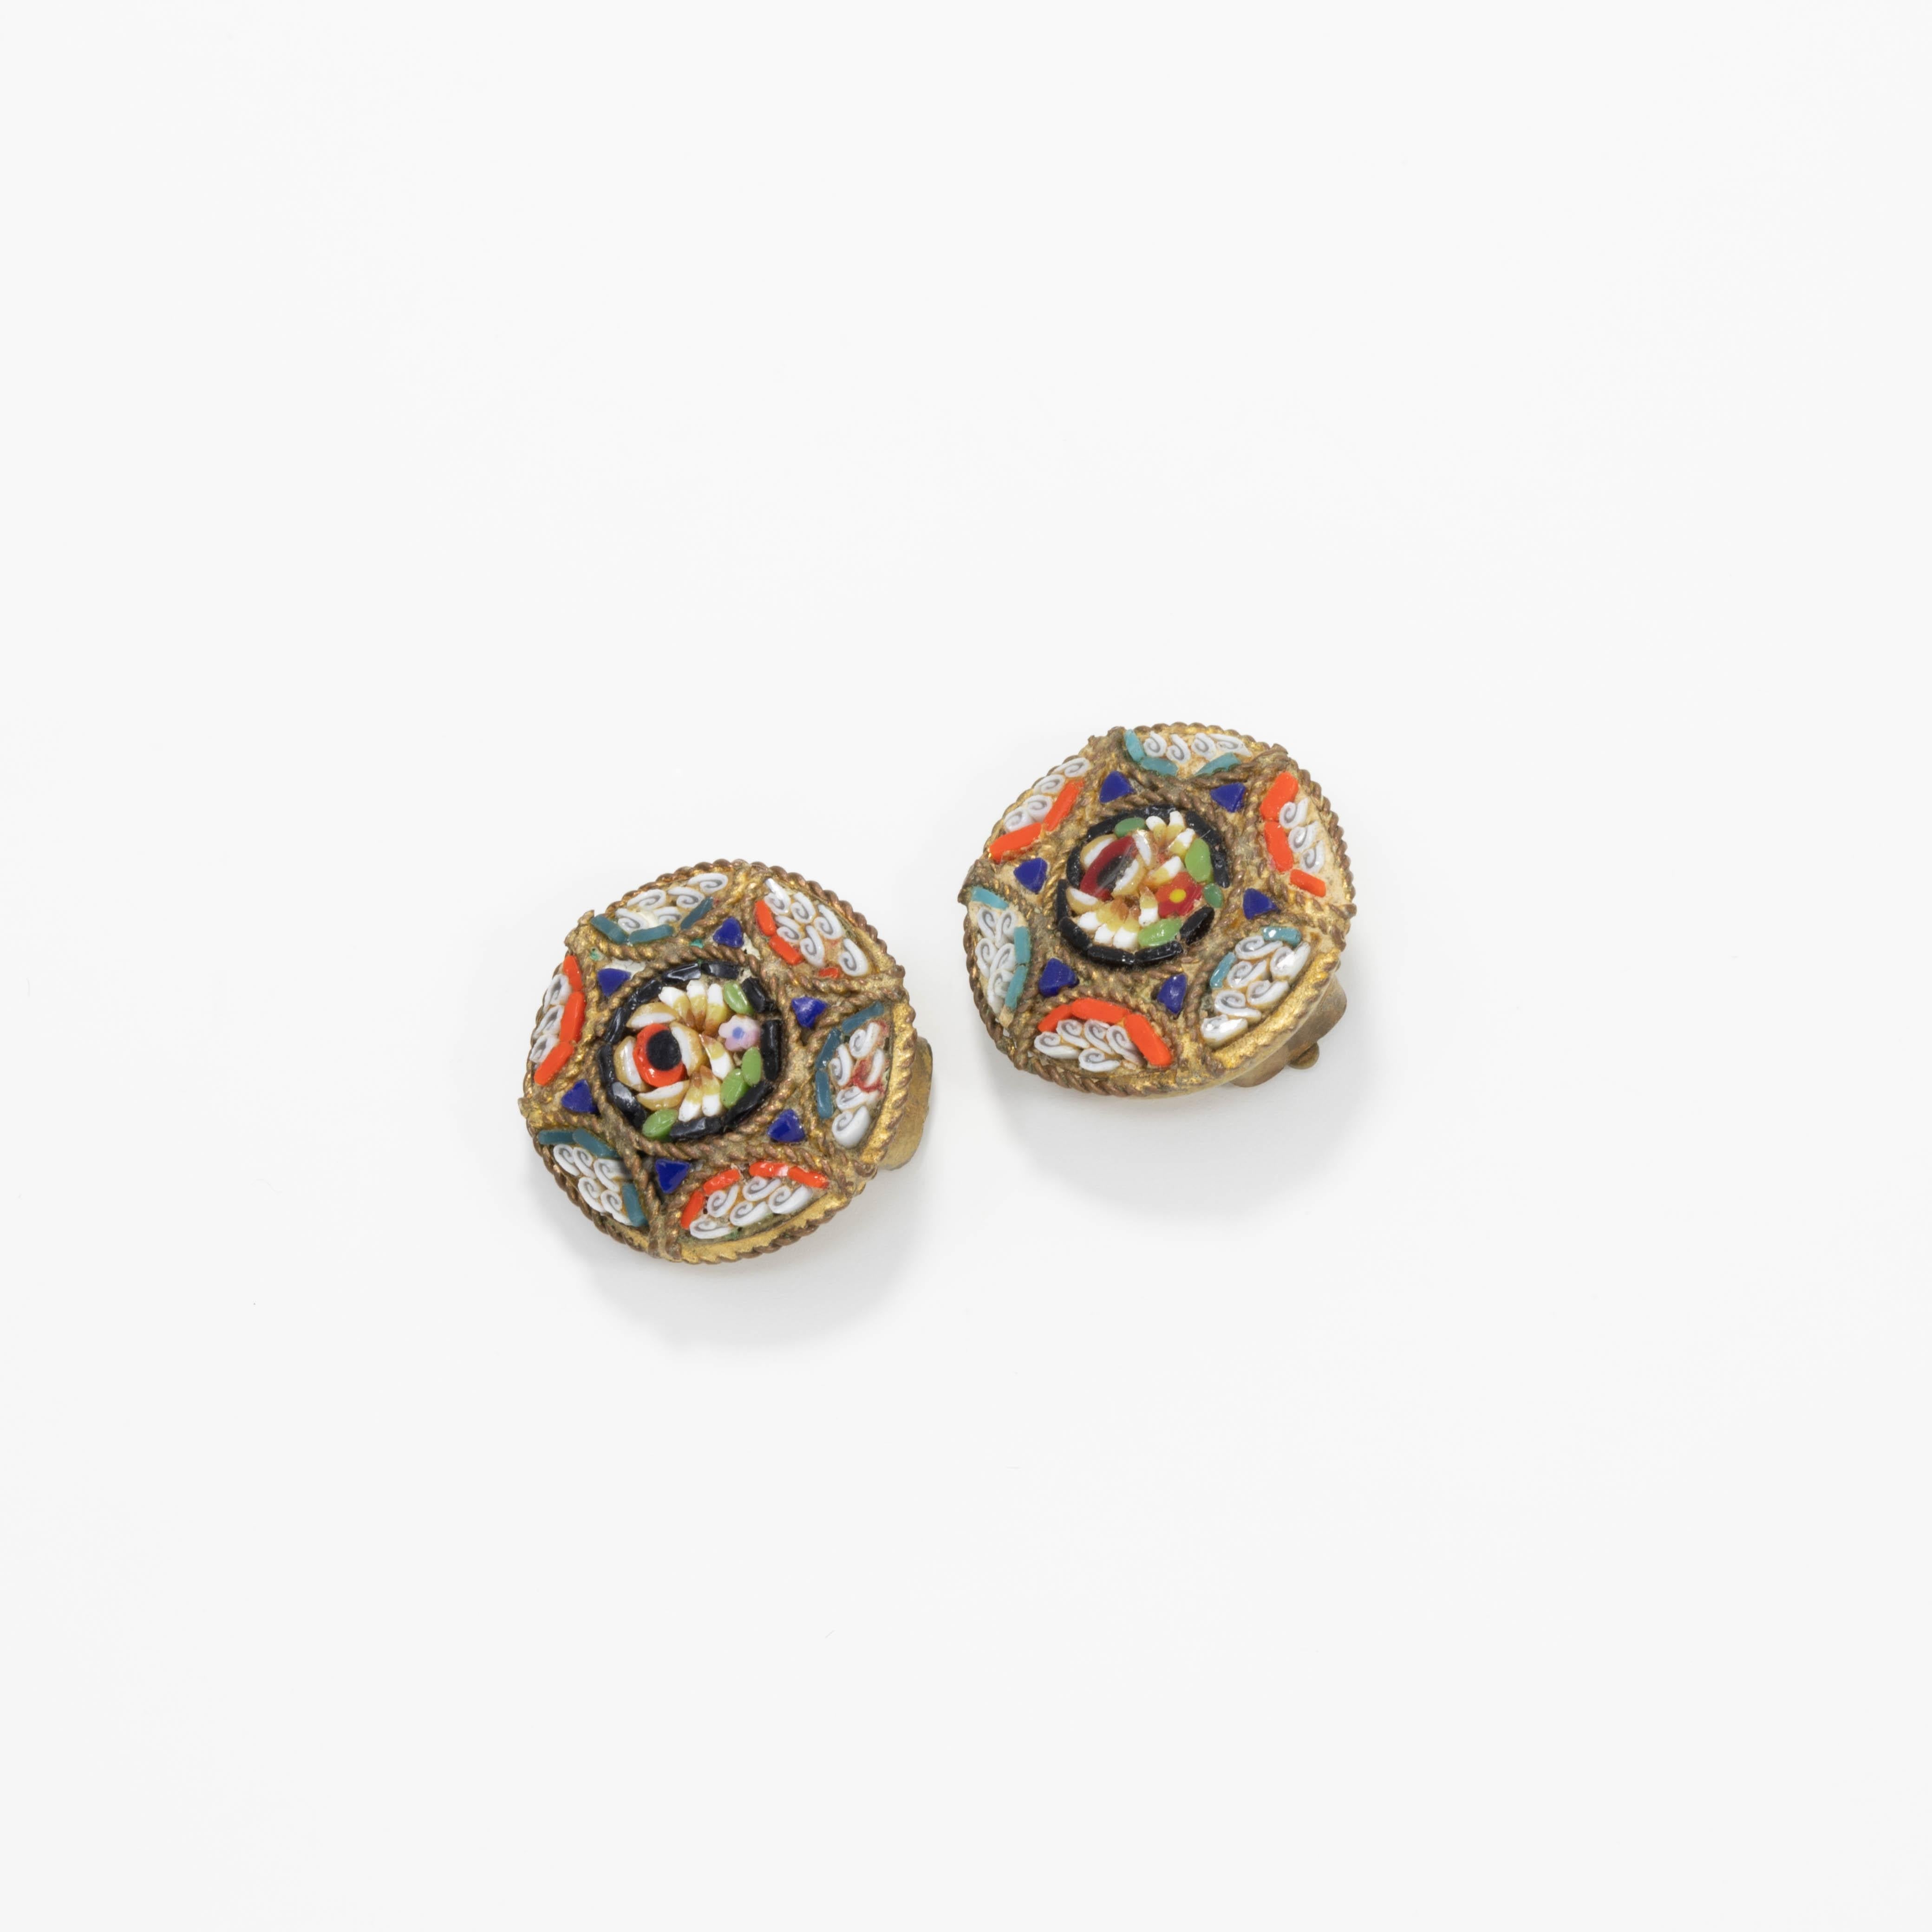 Une paire de petites mais élégantes boucles d'oreilles italiennes en cloisonné avec des motifs floraux bleus, orange, blancs et verts. Sertissage en laiton.

Tags, Marques, Poinçons : Italie (une boucle d'oreille)